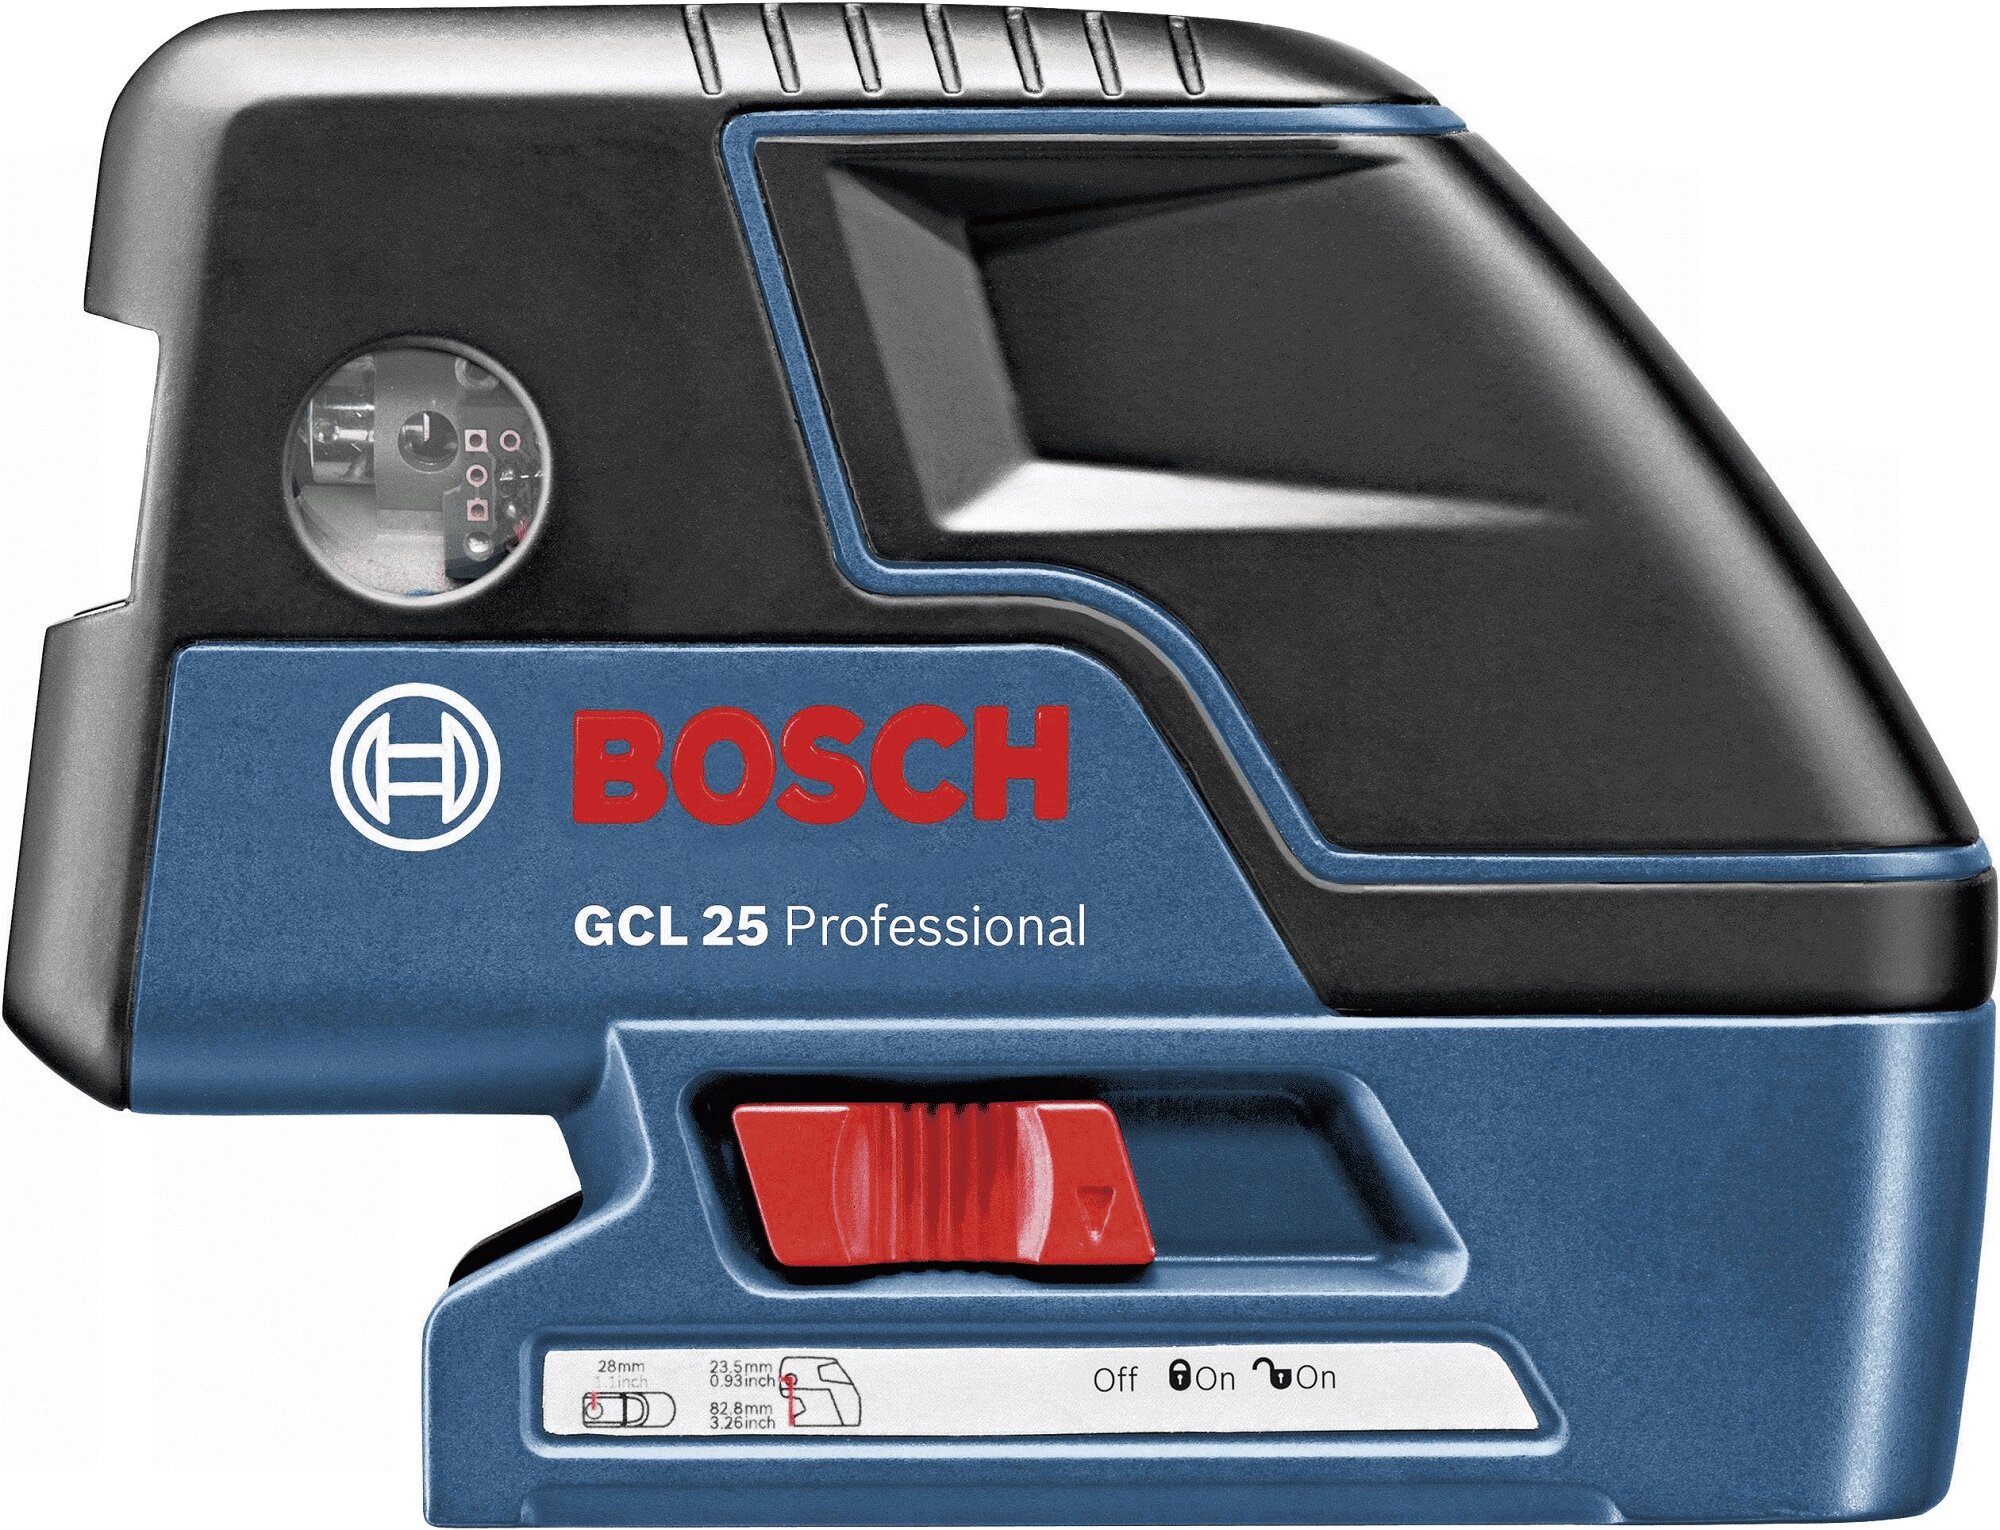 Detektor BOSCH Professional D-Tect 120 0601081303 - niskie ceny i opinie w  Media Expert